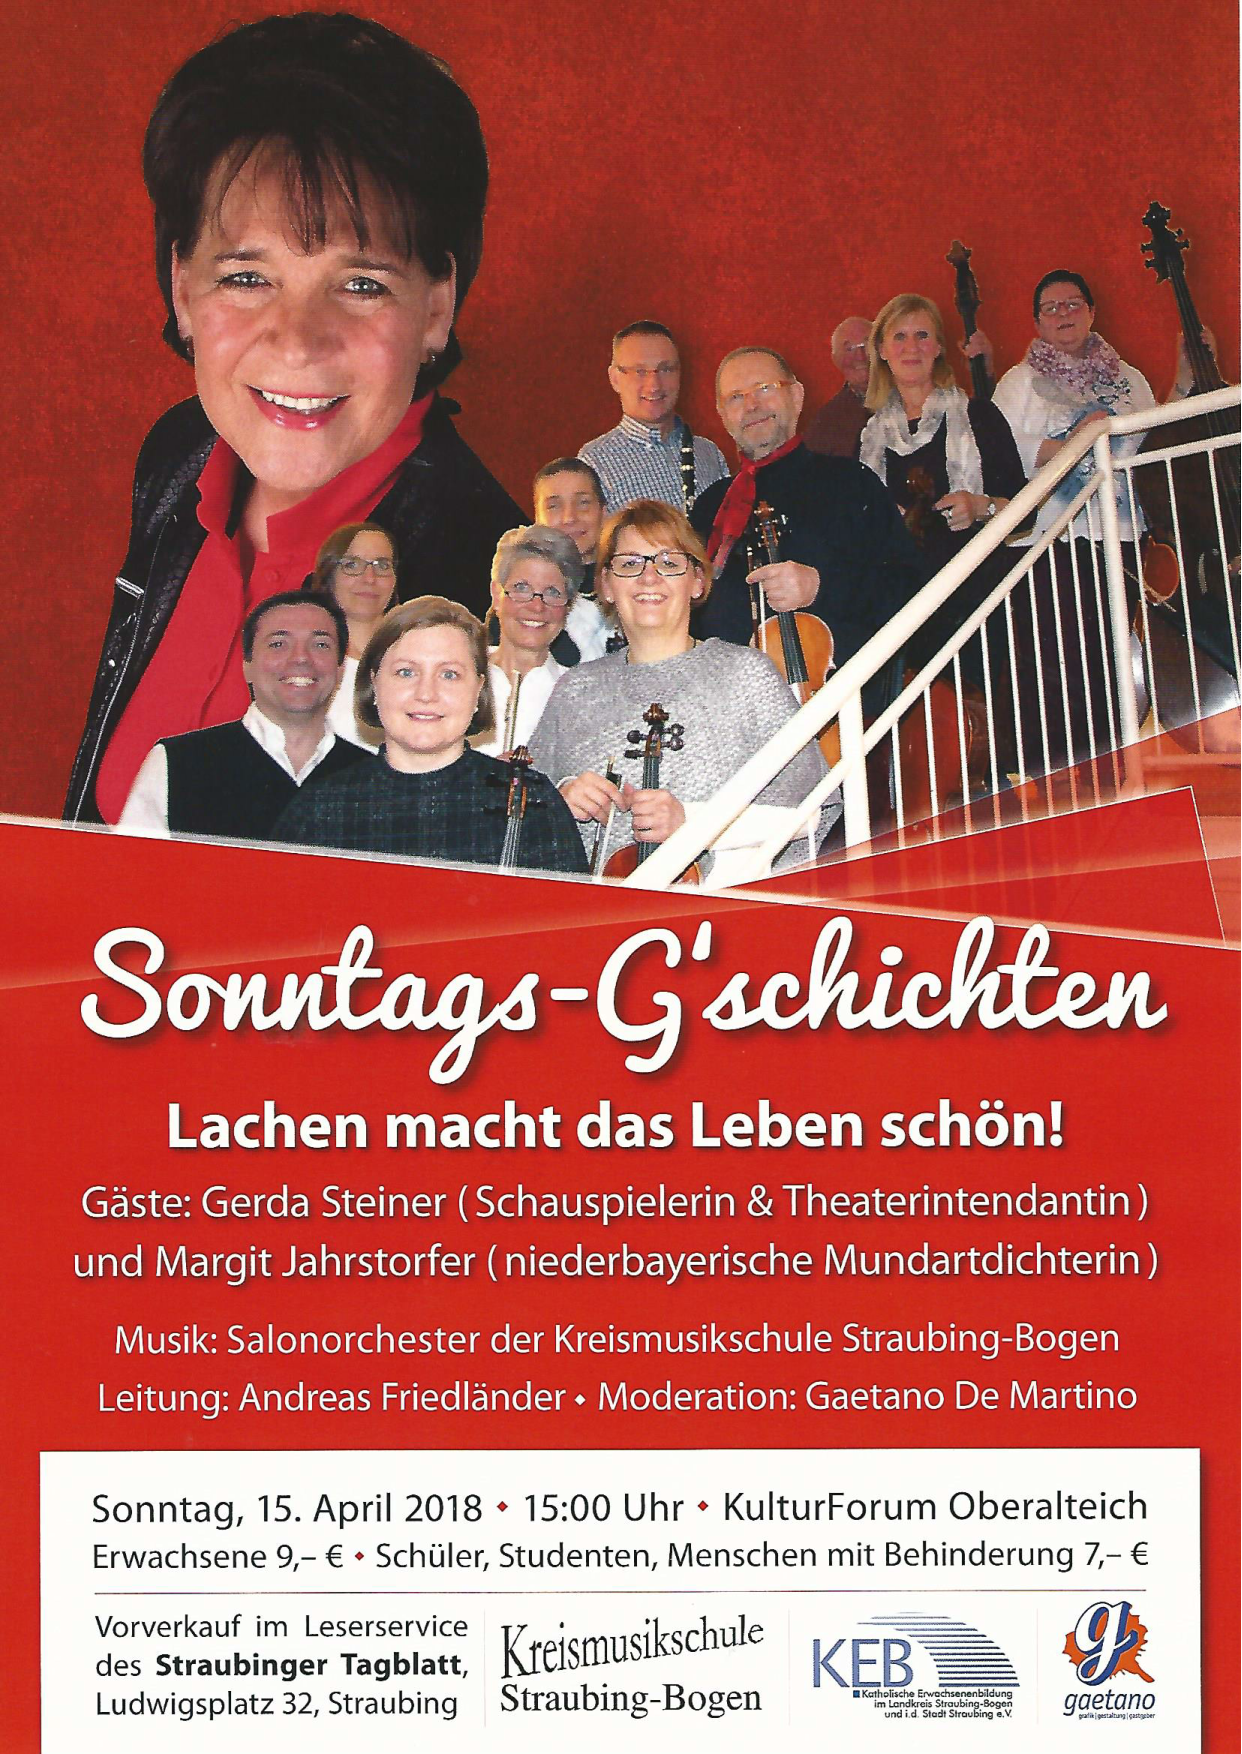 Sonntag-G'schichten mit Gerda Steiner und Margit Jahrstorfer